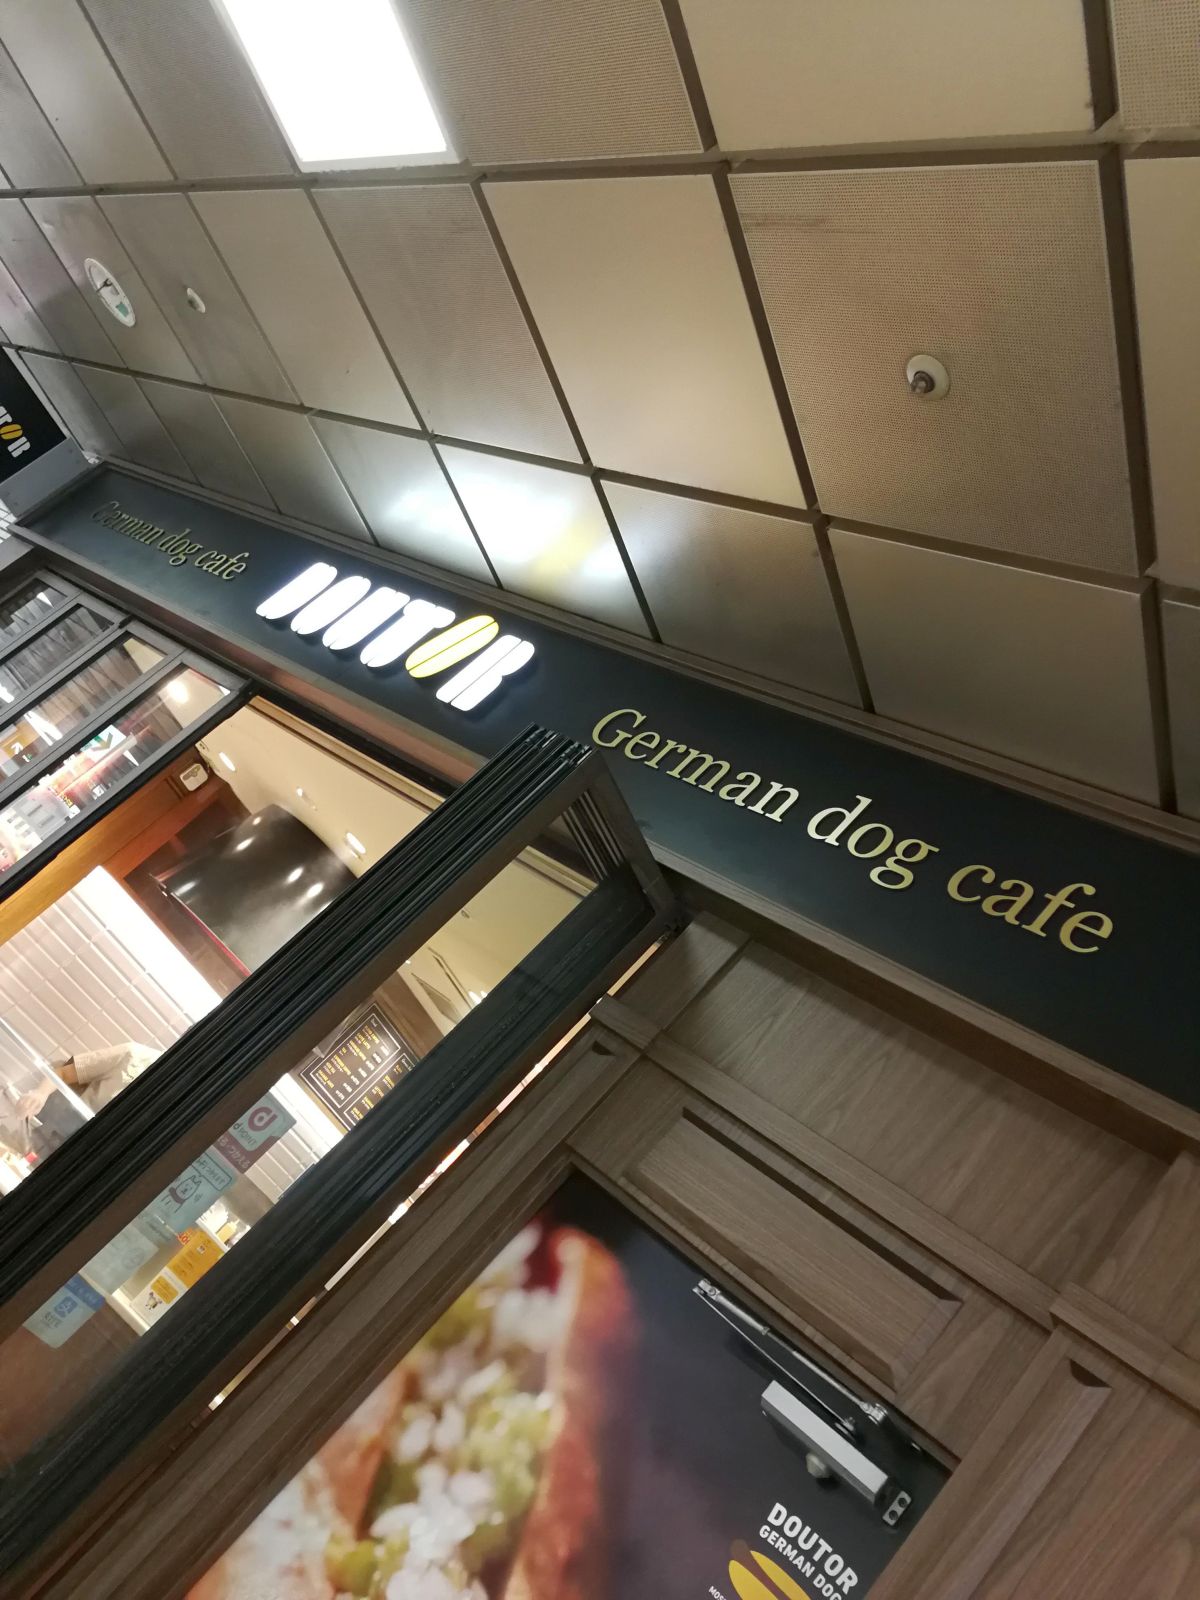 ジャーマンドッグカフェ